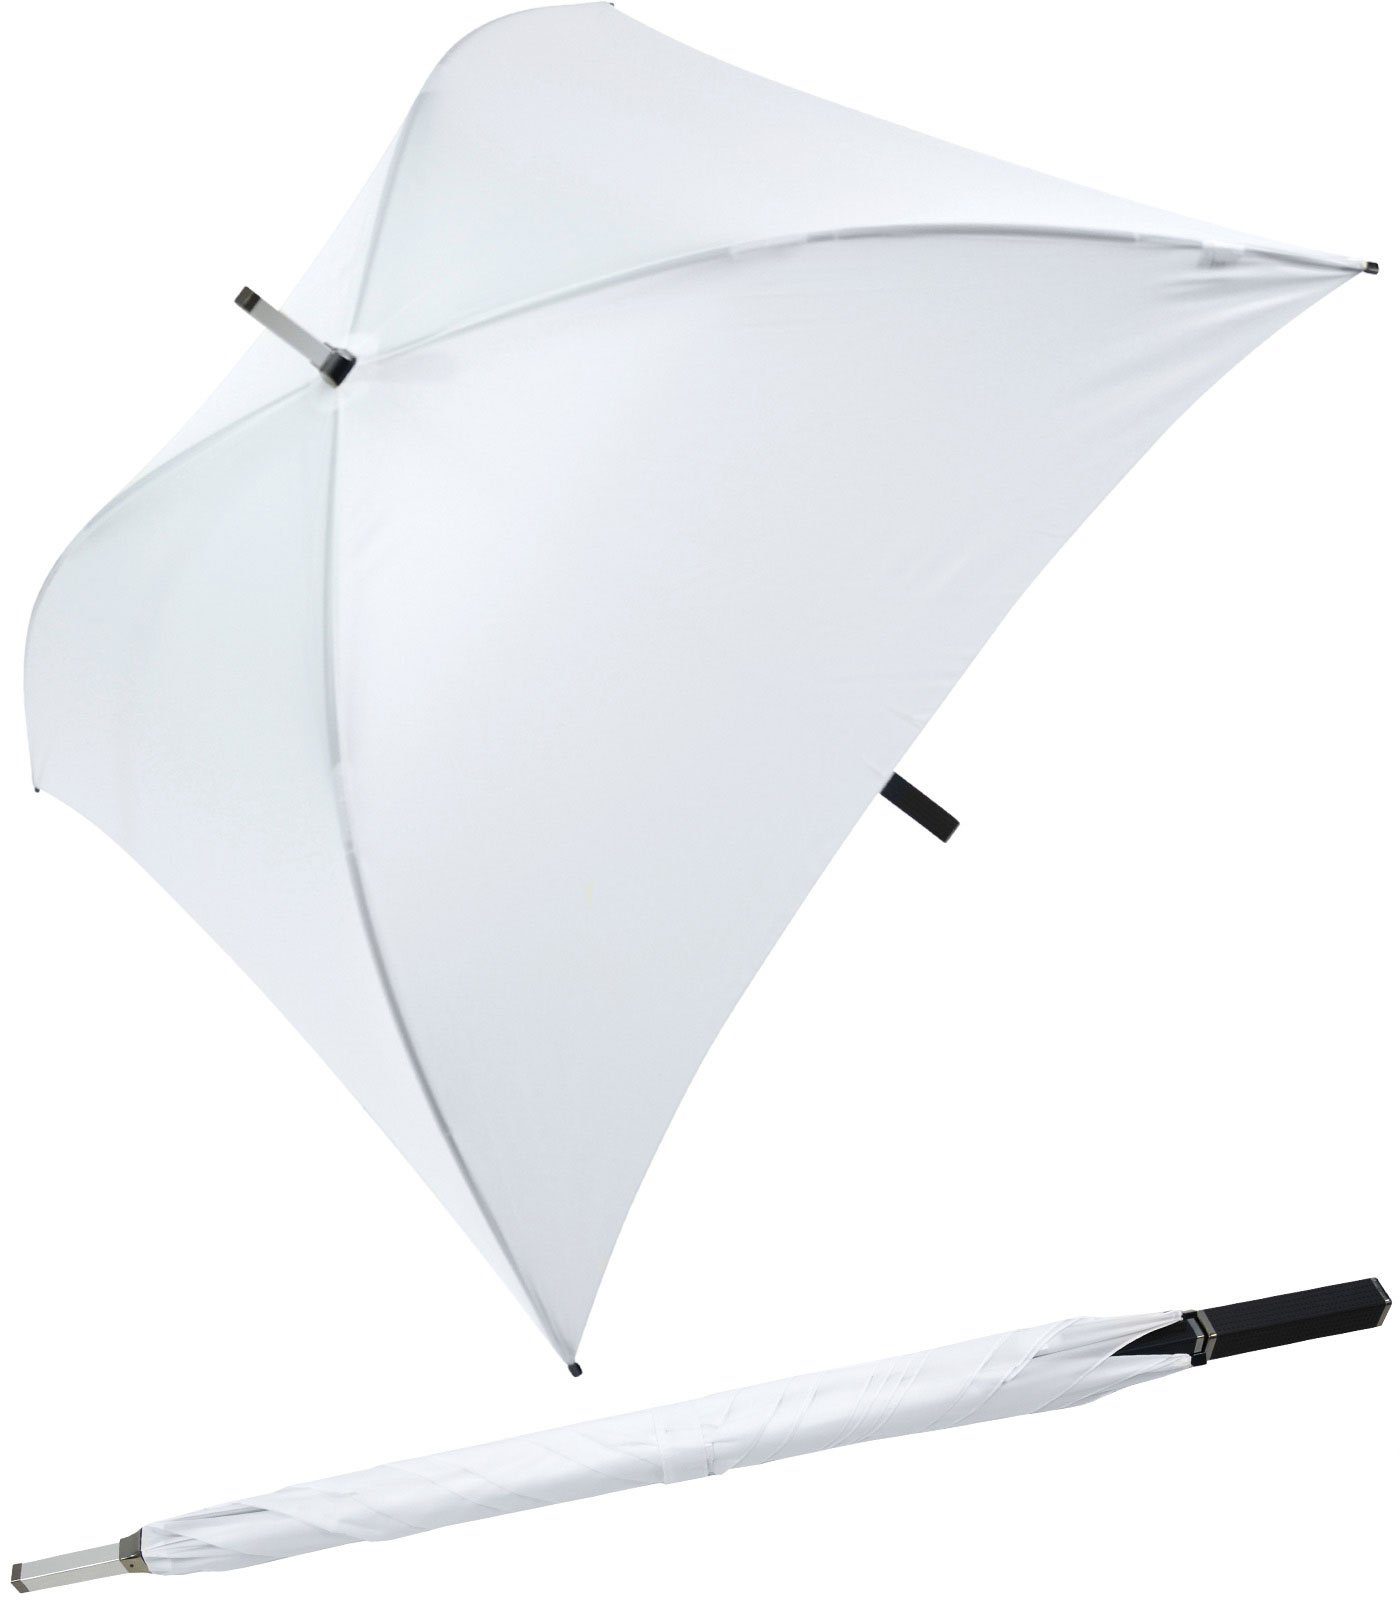 Impliva Langregenschirm All Square® voll quadratischer Regenschirm, der ganz besondere Regenschirm weiß | Stockschirme